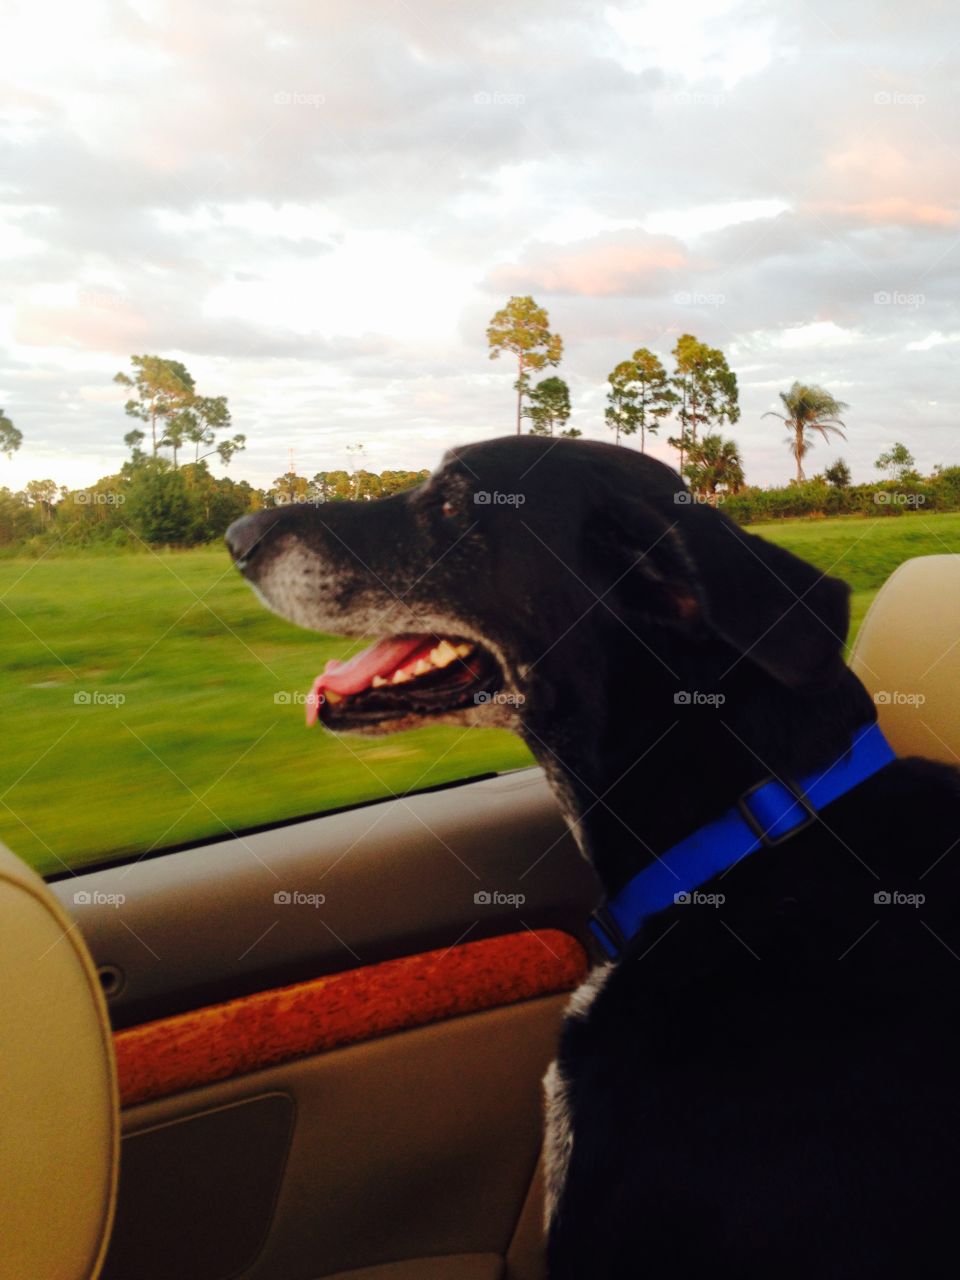 Black dog enjoying the car ride